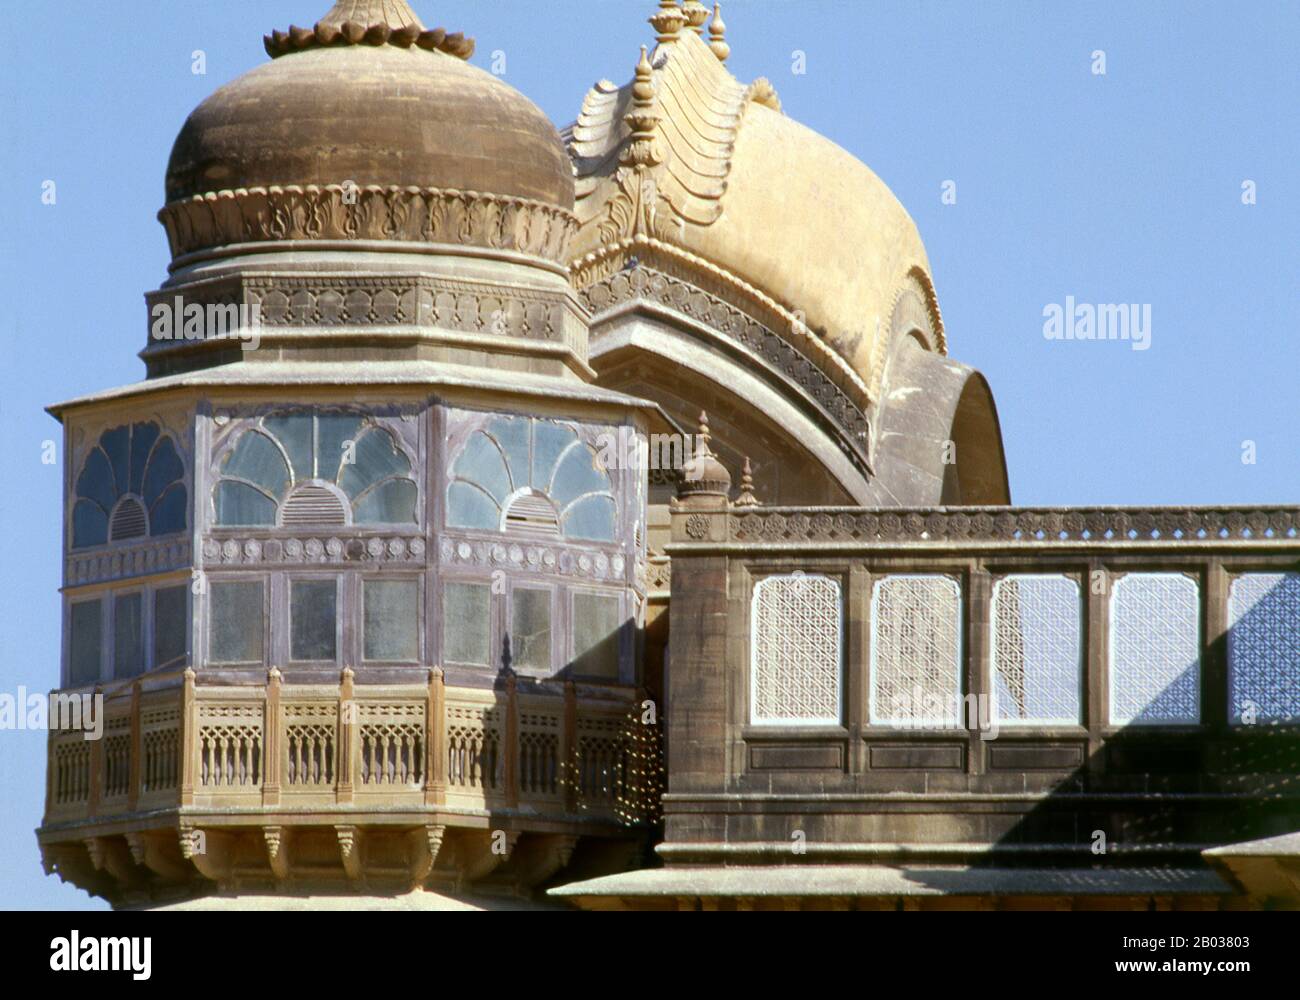 El Palacio Vijaya Vilas es el palacio de verano único de la Jadeja Rajas de Kutch. El palacio fue construido durante el reinado de Maharao Shri Khengarji III, el Maharao de Kutch, como un recurso de verano para el uso de su hijo y heredero al reino, el Yuvraj Shri Vijayaraji. La construcción del palacio comenzó en 1920 y se terminó en 1929. Kutch (a menudo deletreado Kachch) es la parte noroccidental del estado indio de Gujarat, dividido de la parte principal del estado por el mar Arábigo y un tramo de marismas de sal. Al norte se encuentra la provincia pakistaní de Sind. Se dice que el nombre de Kutch es deri Foto de stock